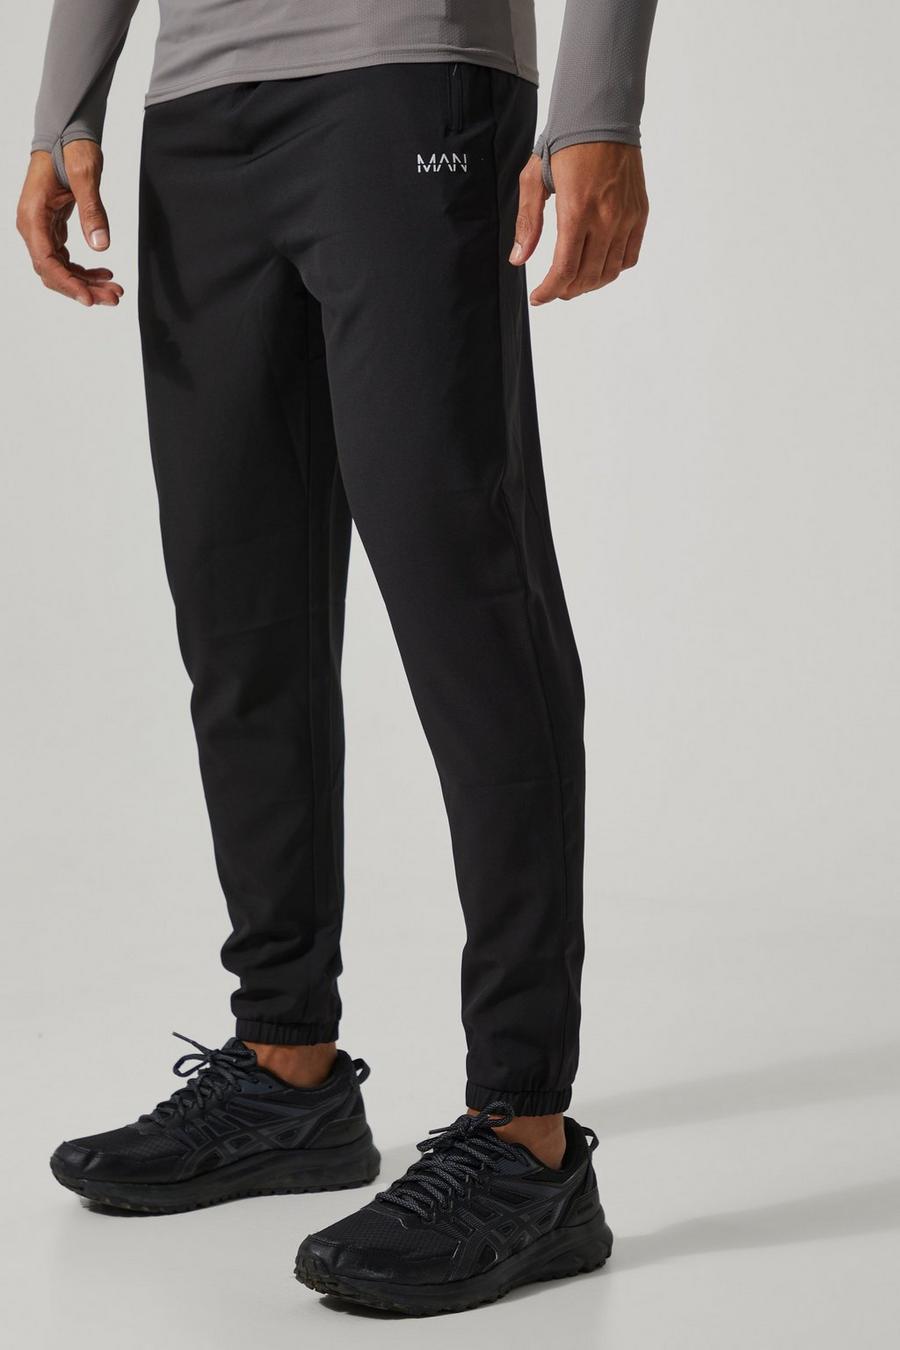 Pantalón deportivo MAN Active ajustado, Black nero